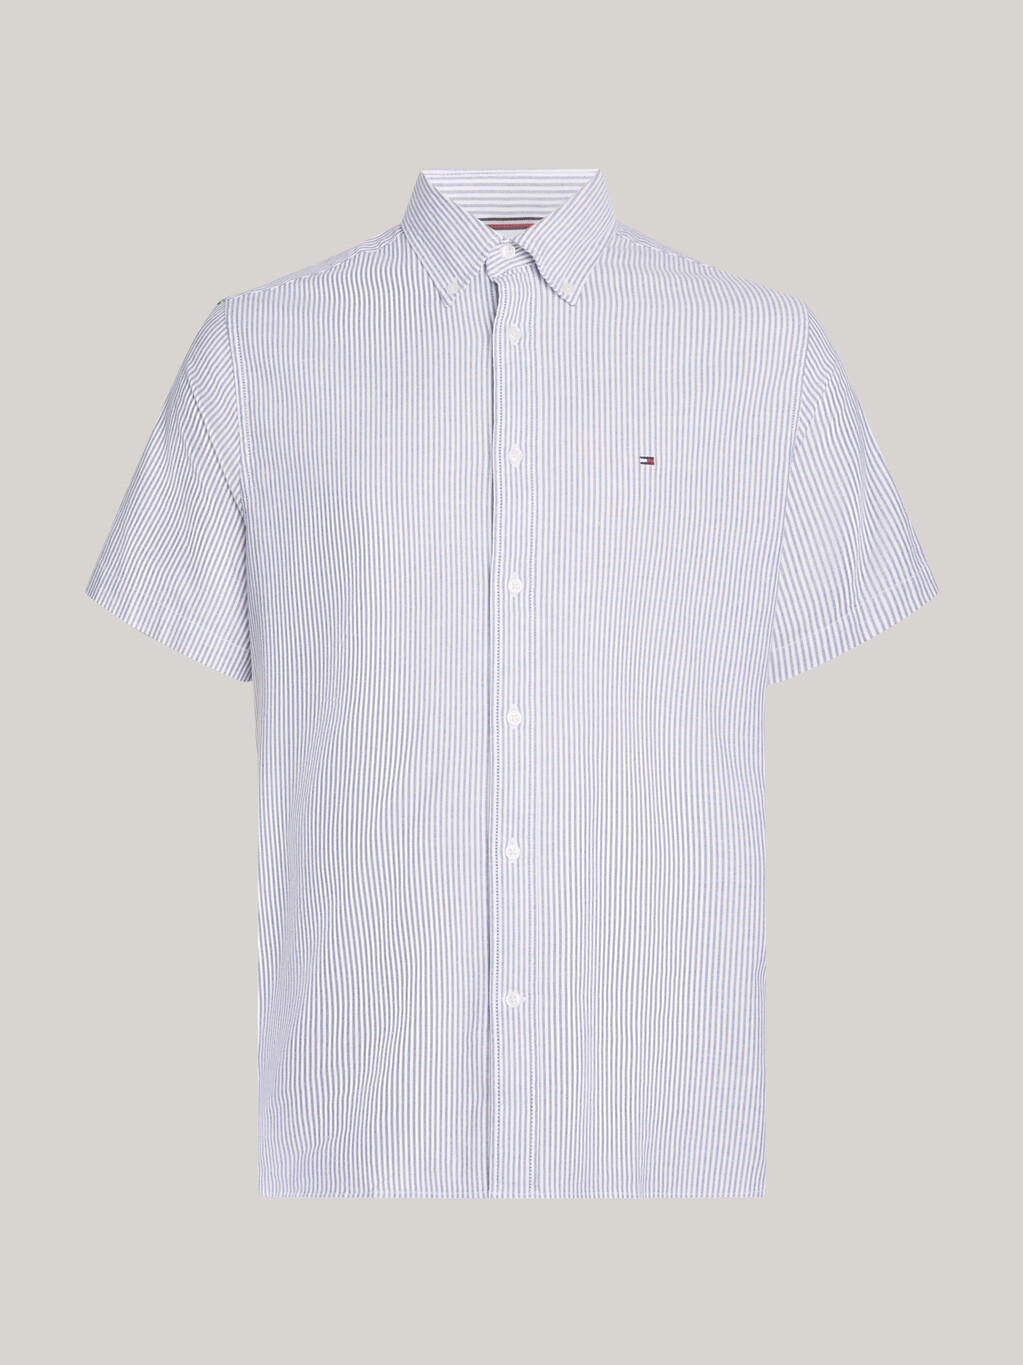 旗幟條紋短袖襯衫, Carbon Navy / Optic White, hi-res